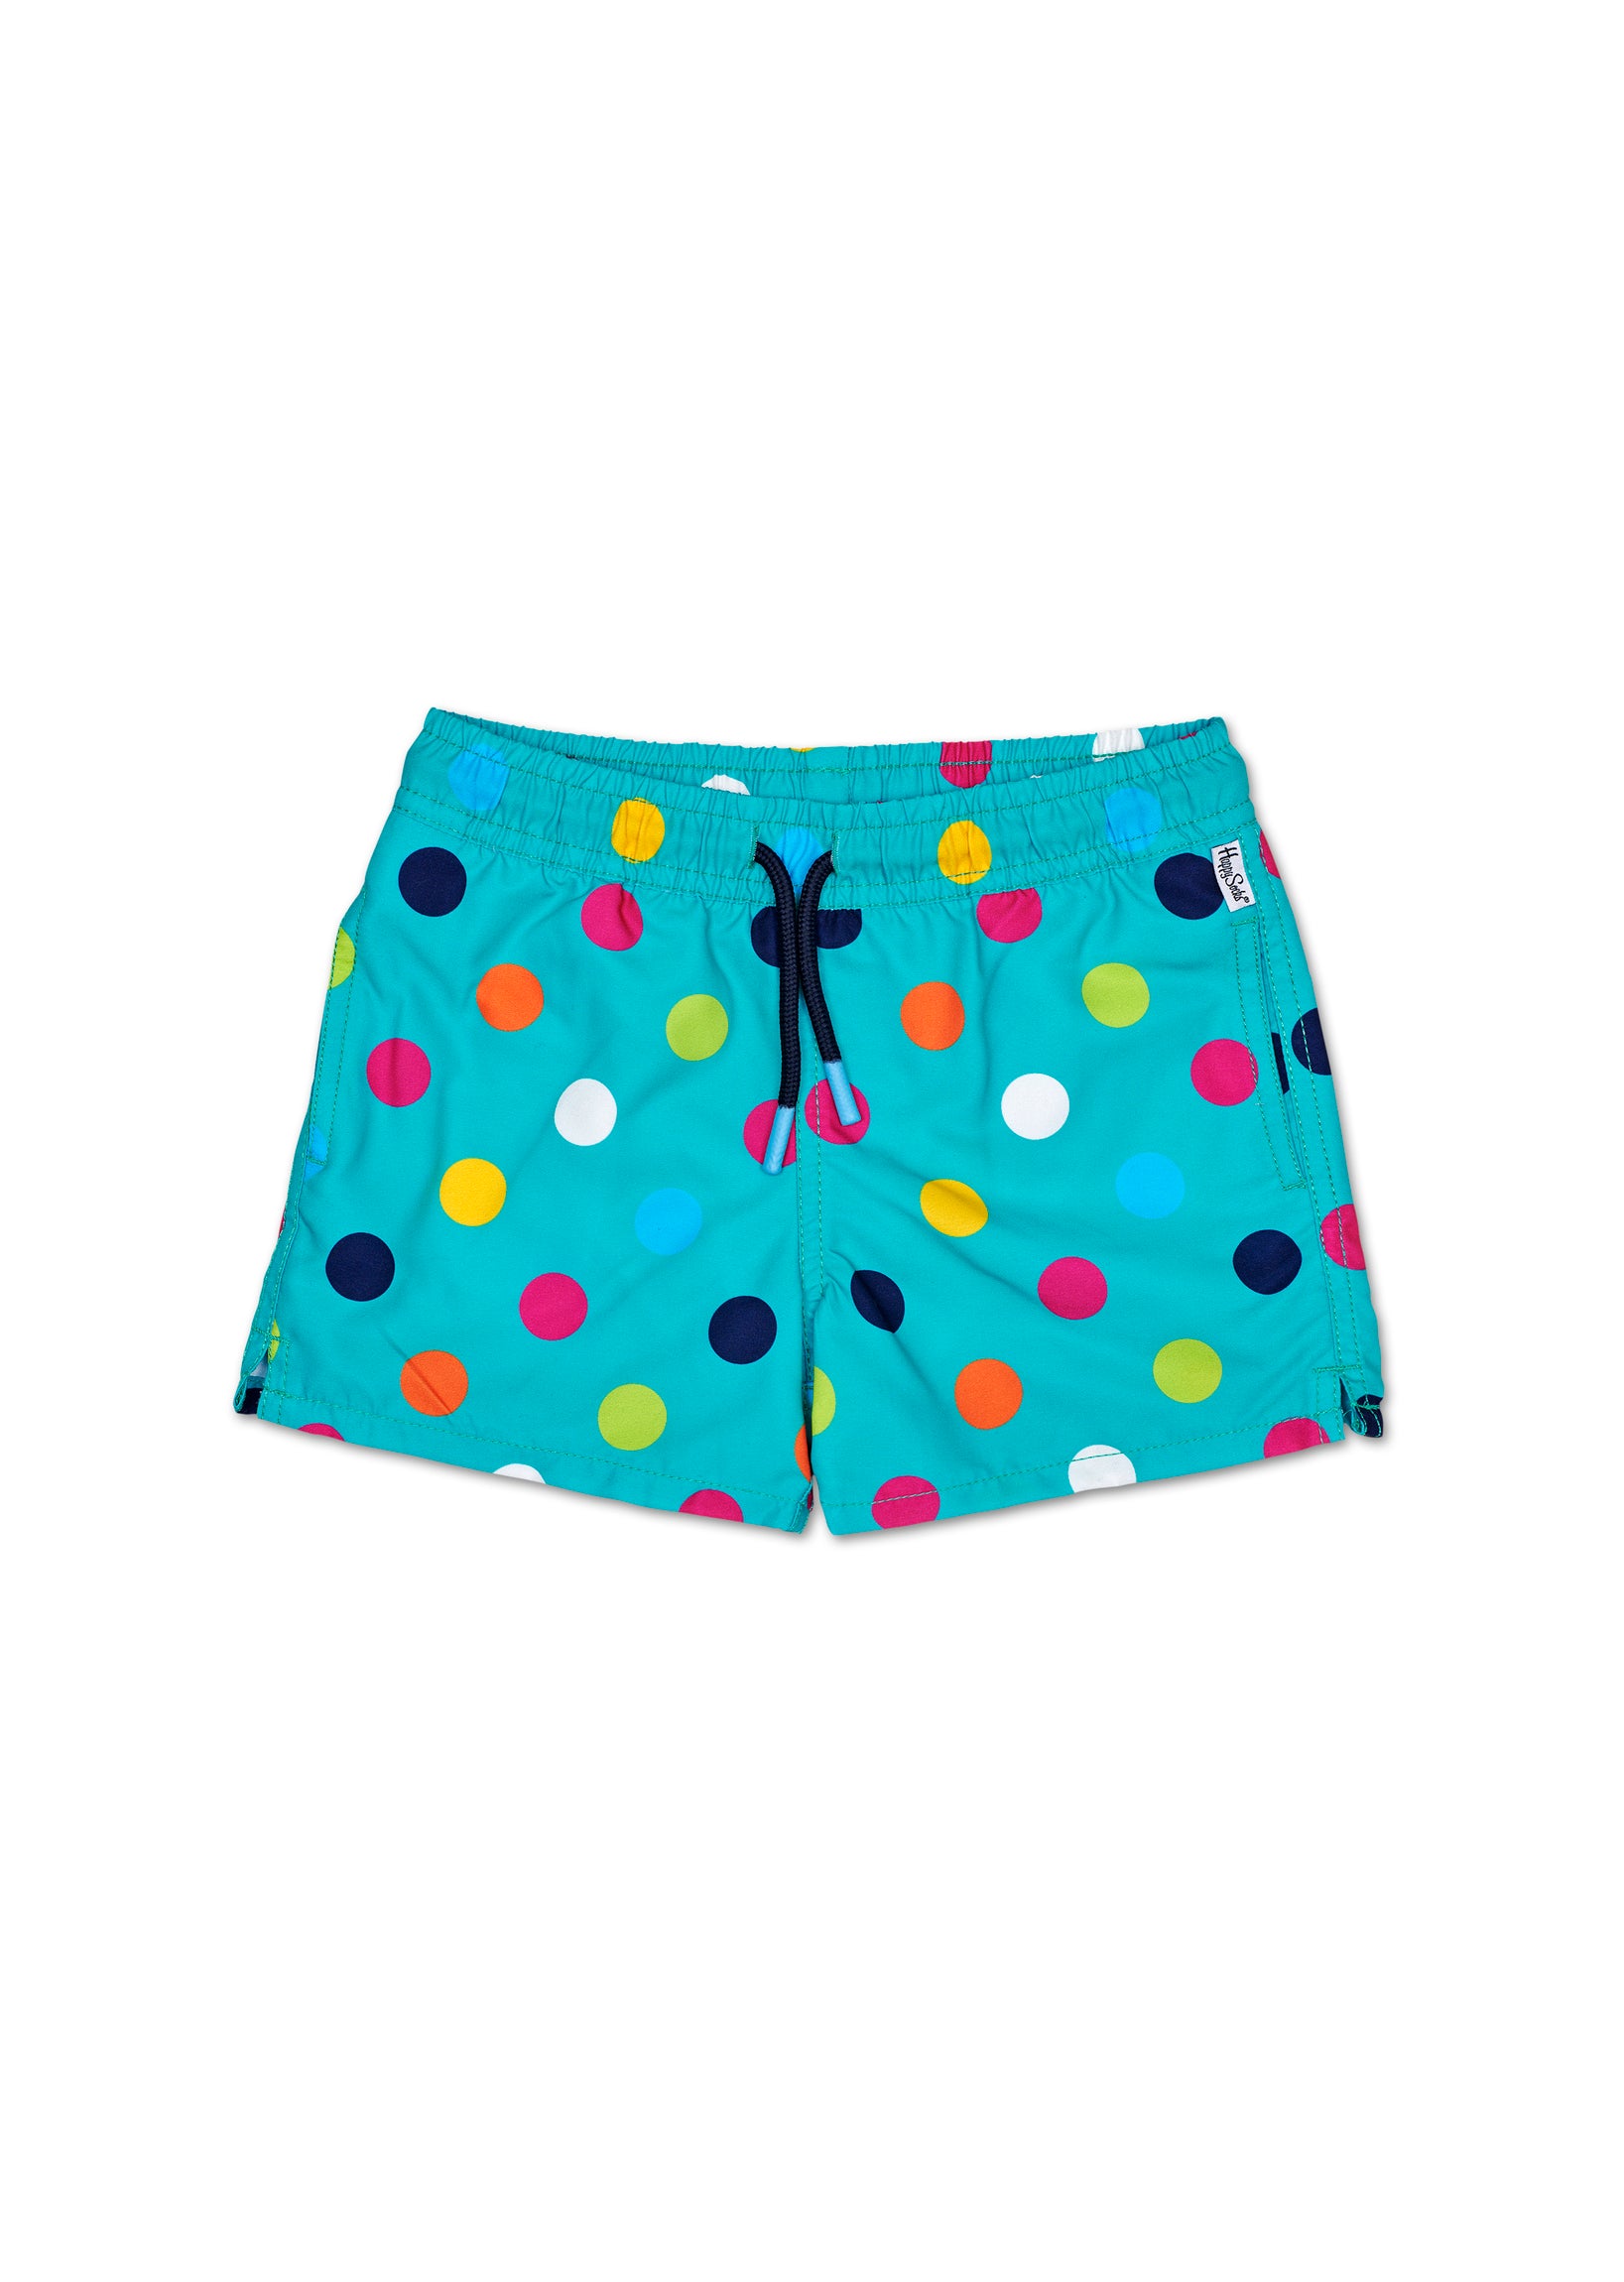 Dětské tyrkysové plavky Happy Socks s puntíky, vzor Big Dot